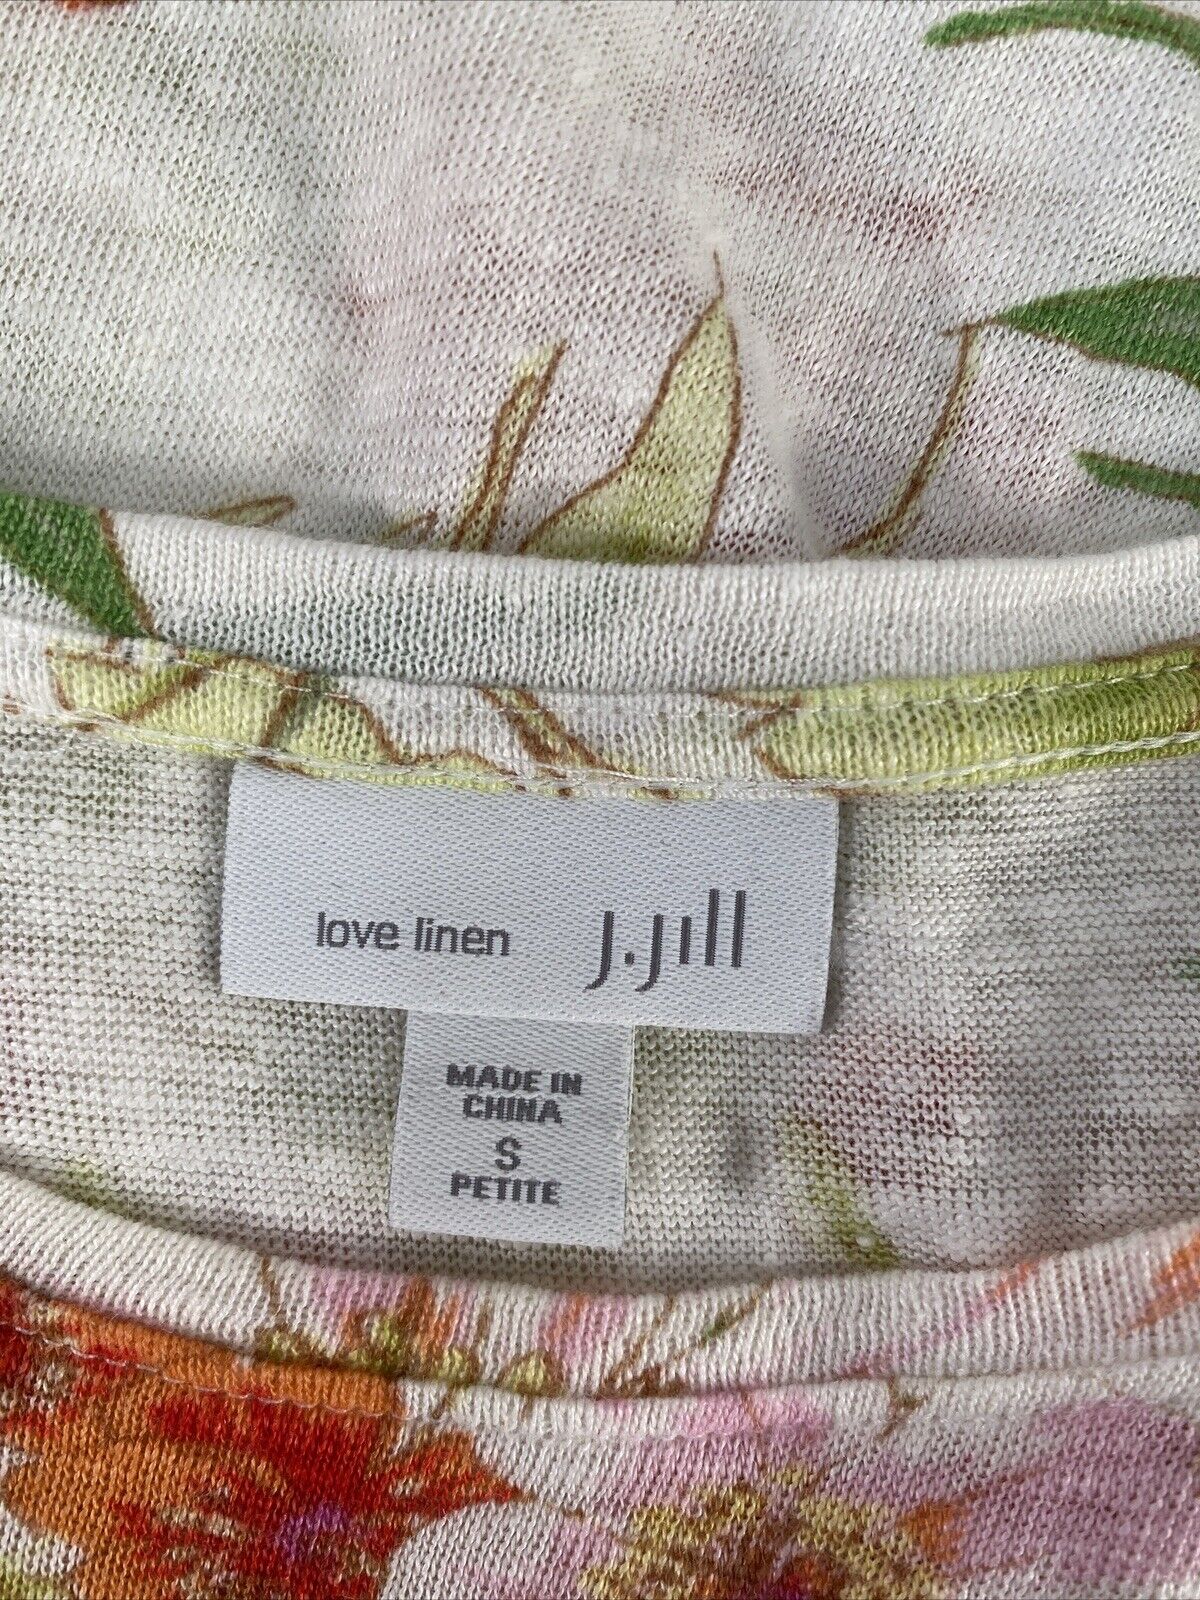 J.Jill Women's Ivory Floral Loven Linen Short Sleeve T-Shirt - S Petite